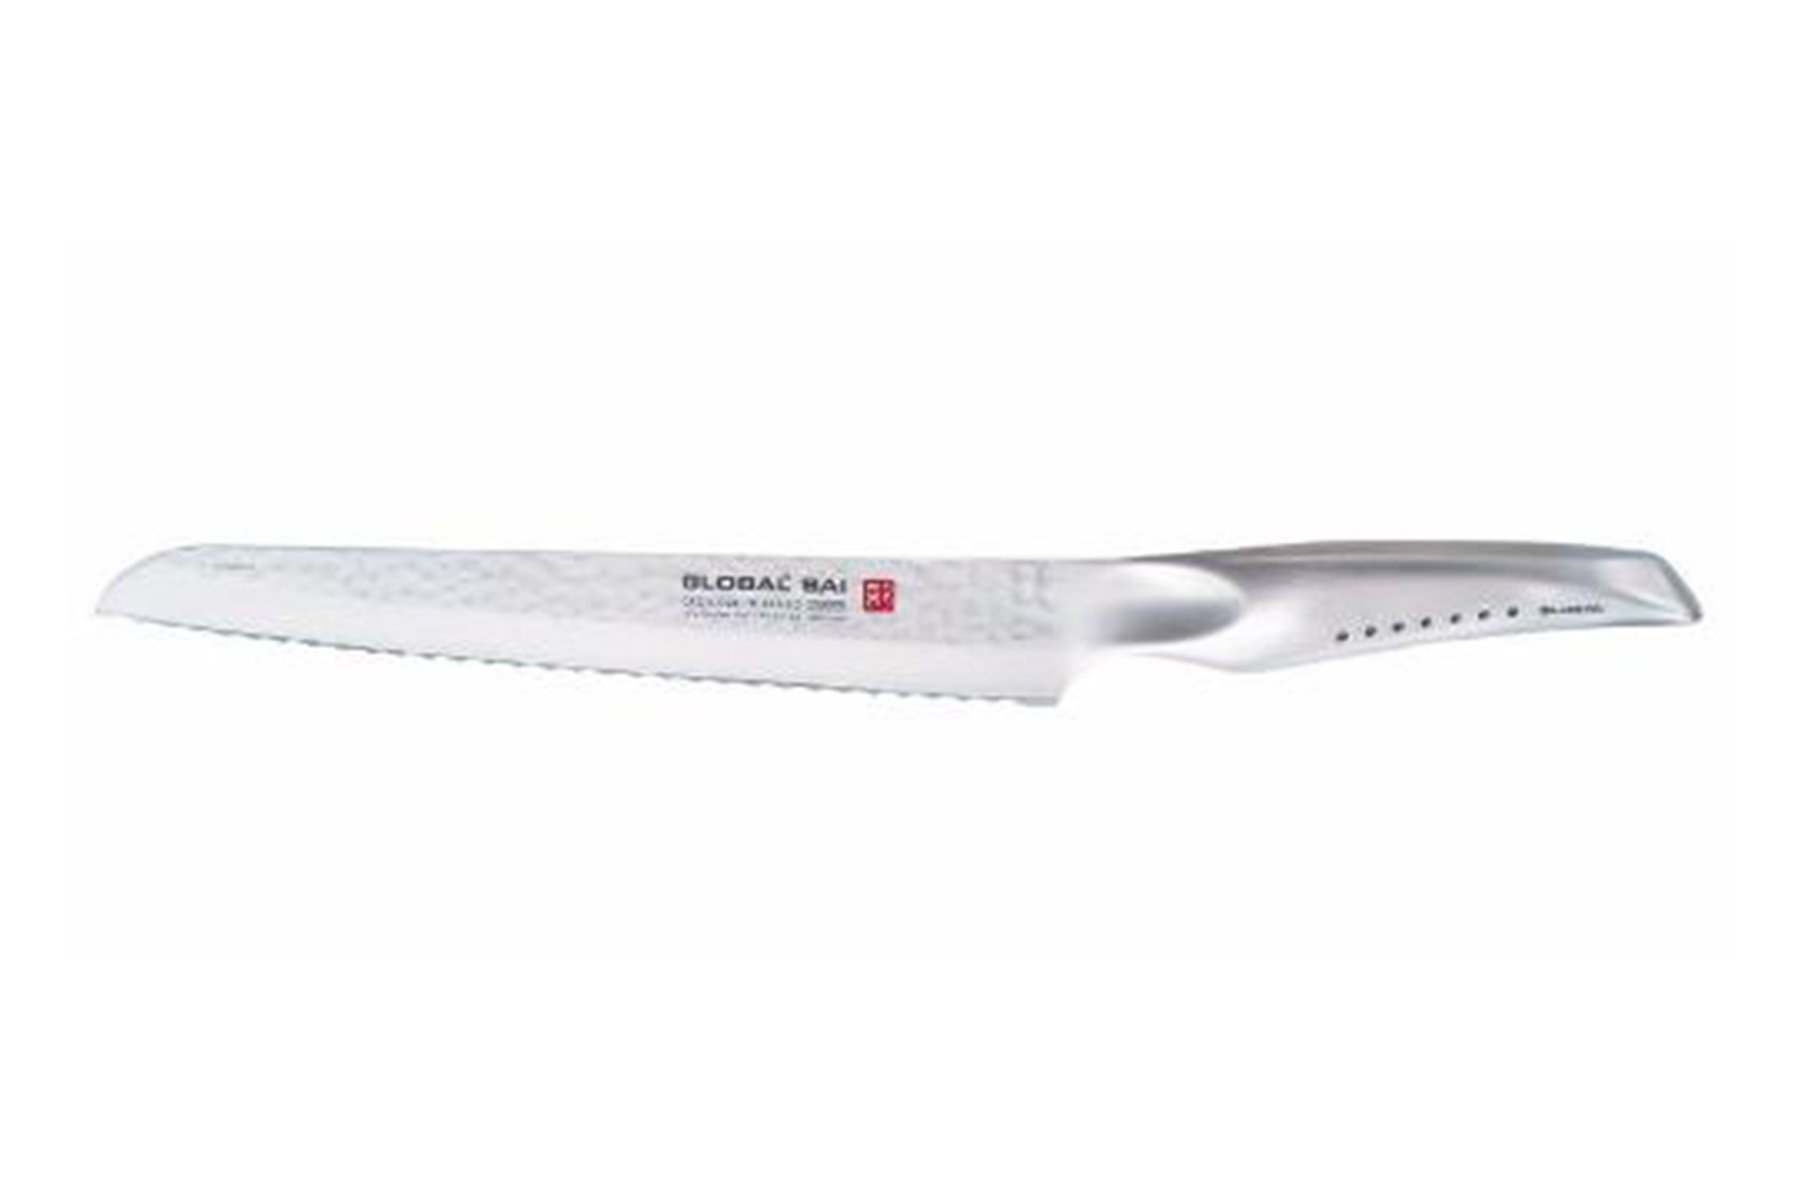 Couteau japonais Global Sai - Pain 17 cm